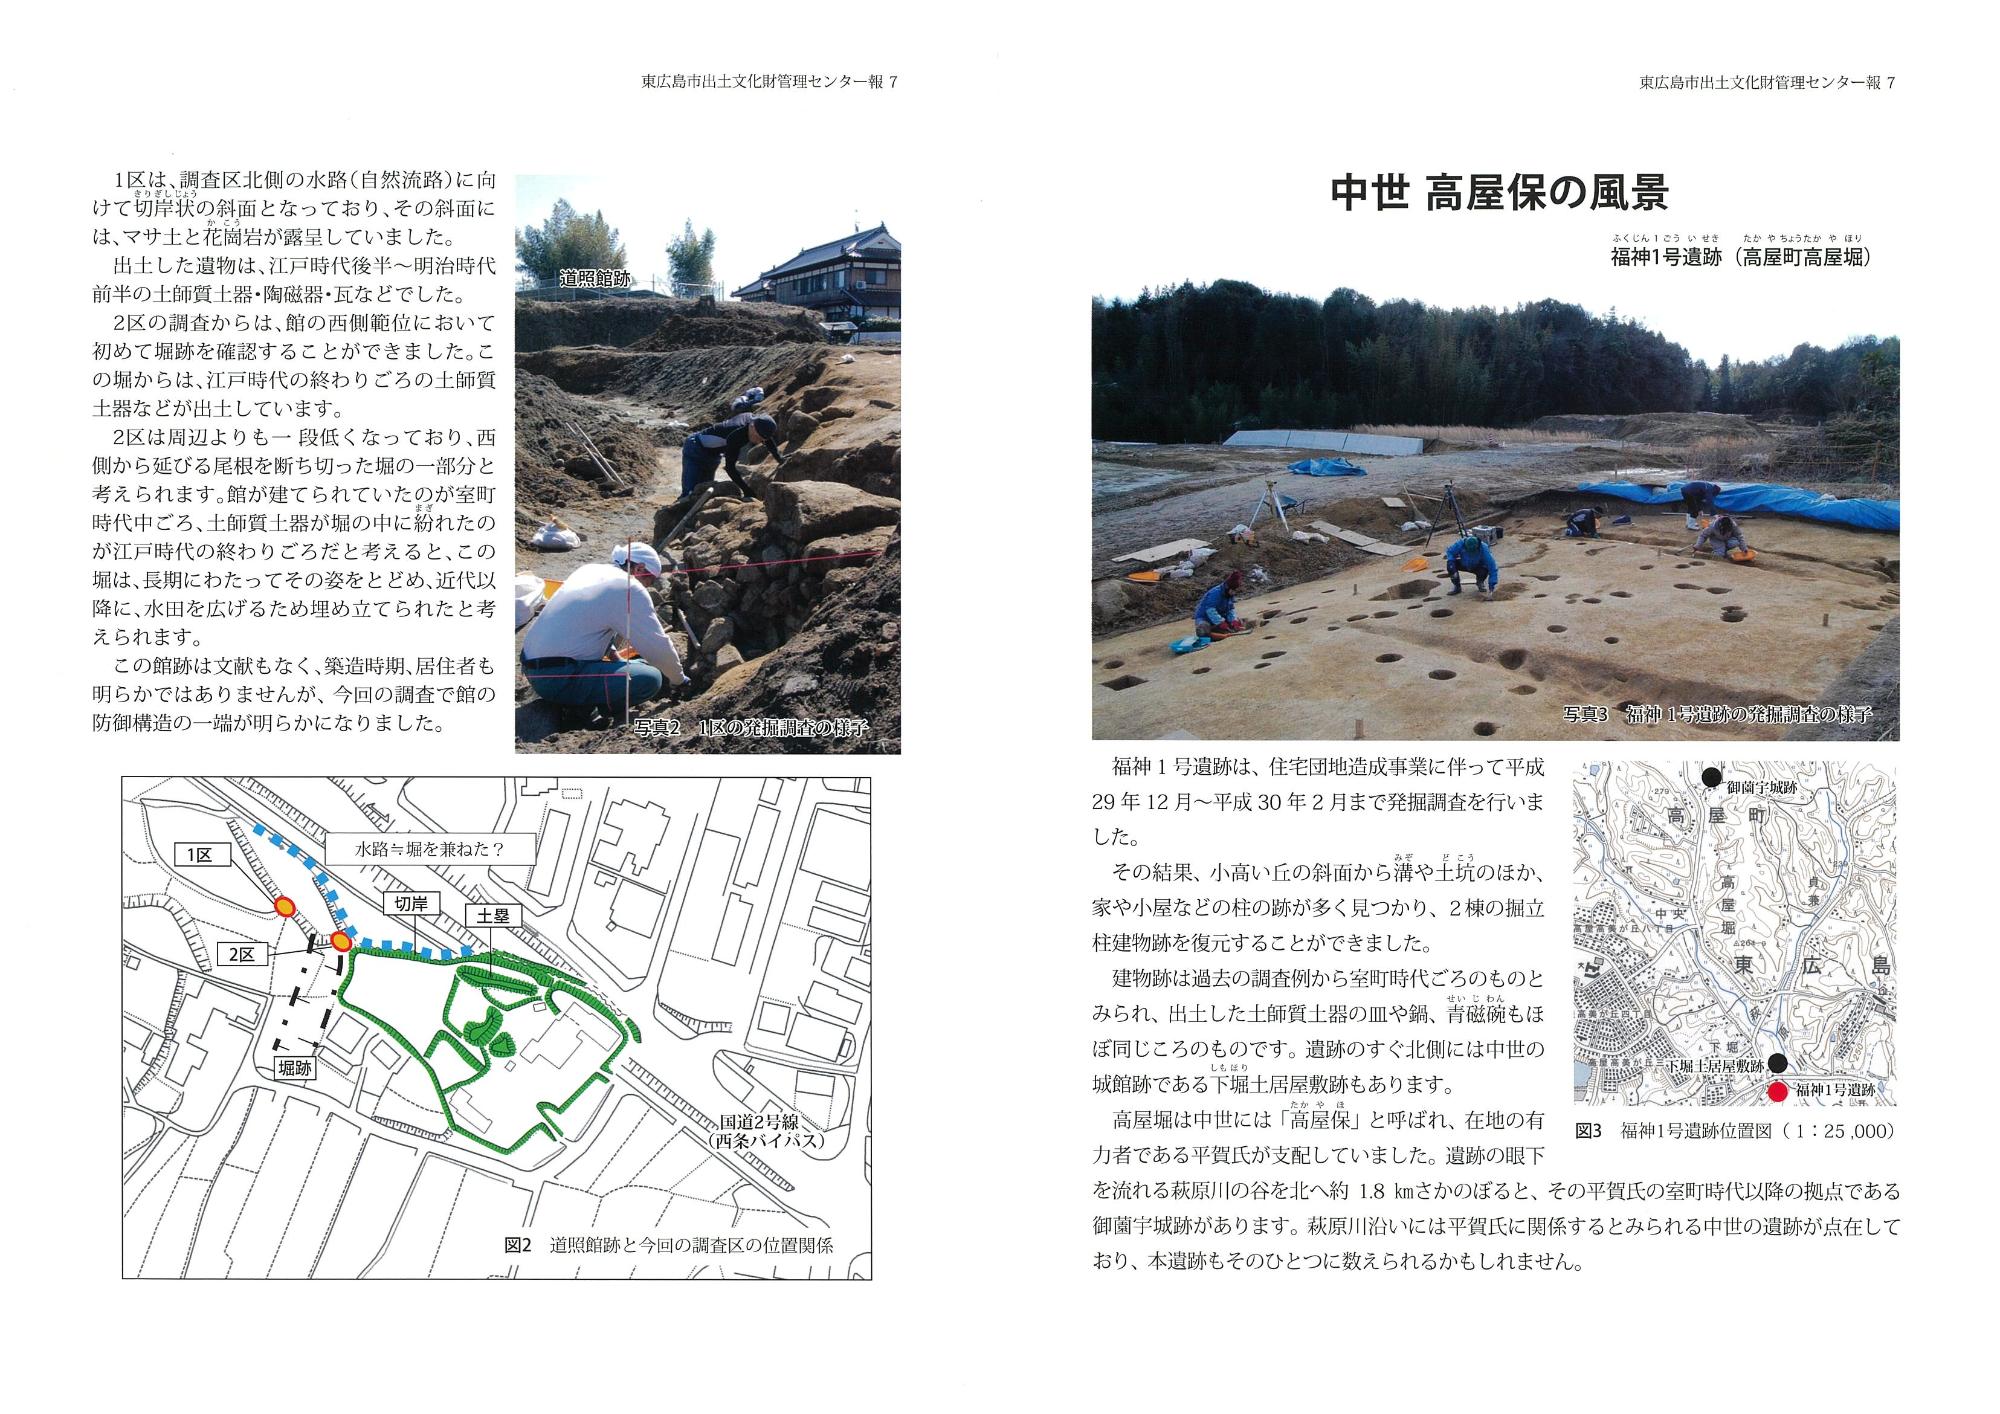 東広島市出土文化財管理センター報『東ひろしまの遺跡』7の写真2